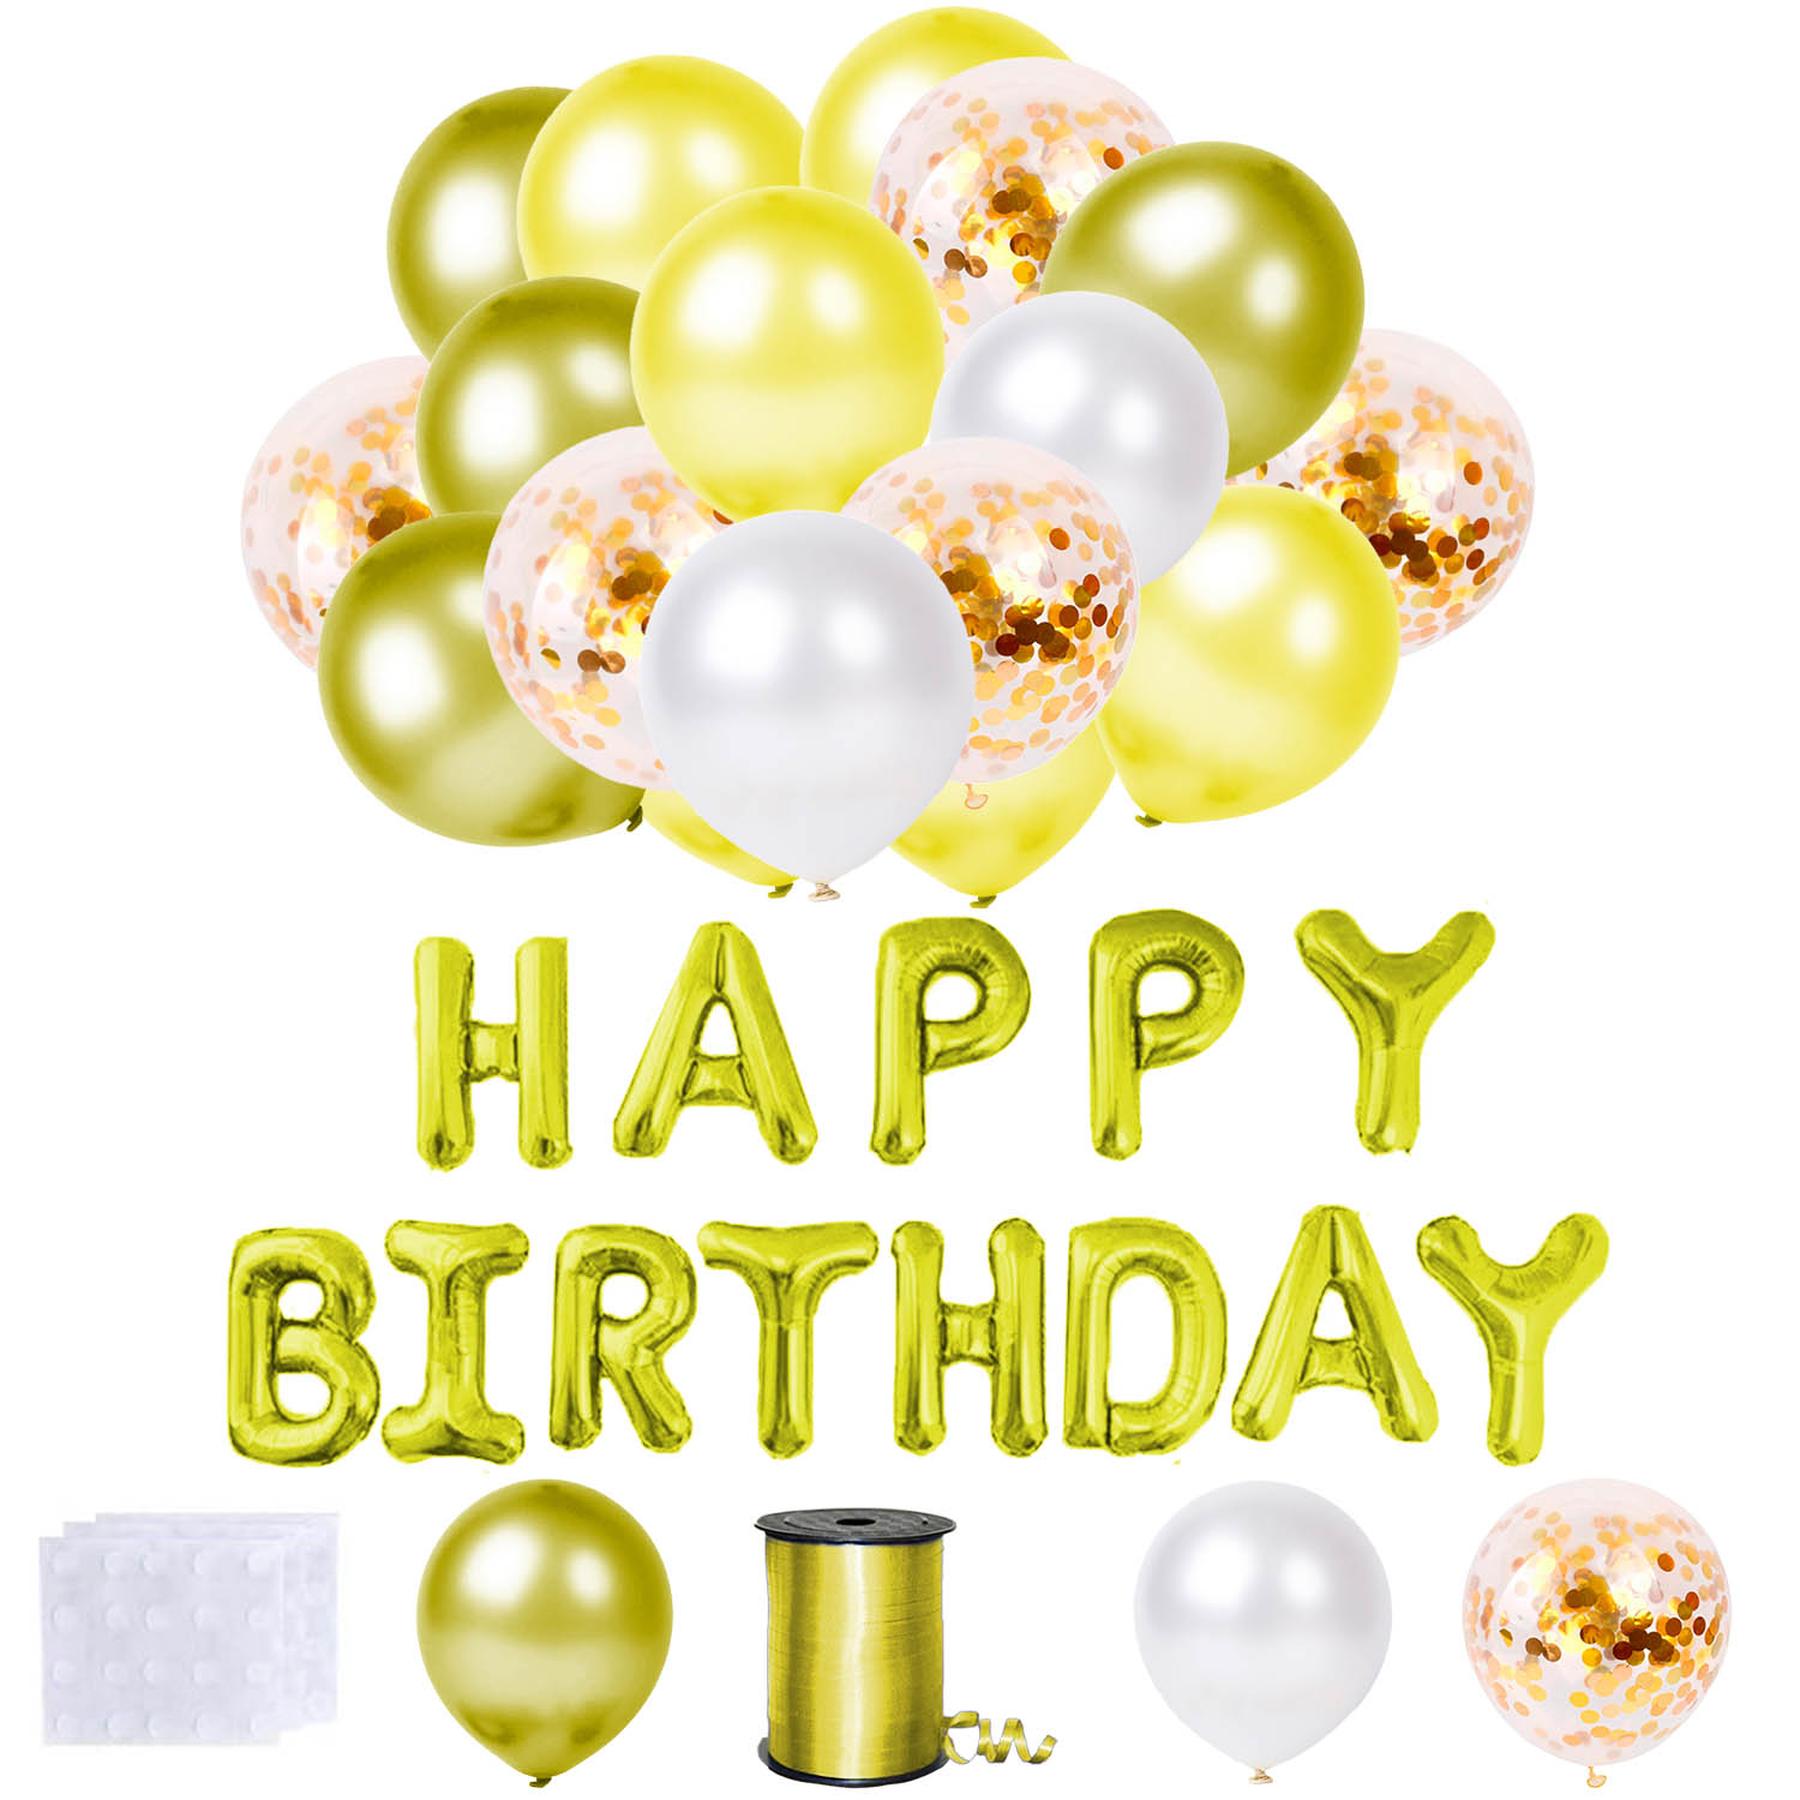 Happy Birthday Luftballon Set 48 tlg., Folienballons, Luftballons, gold